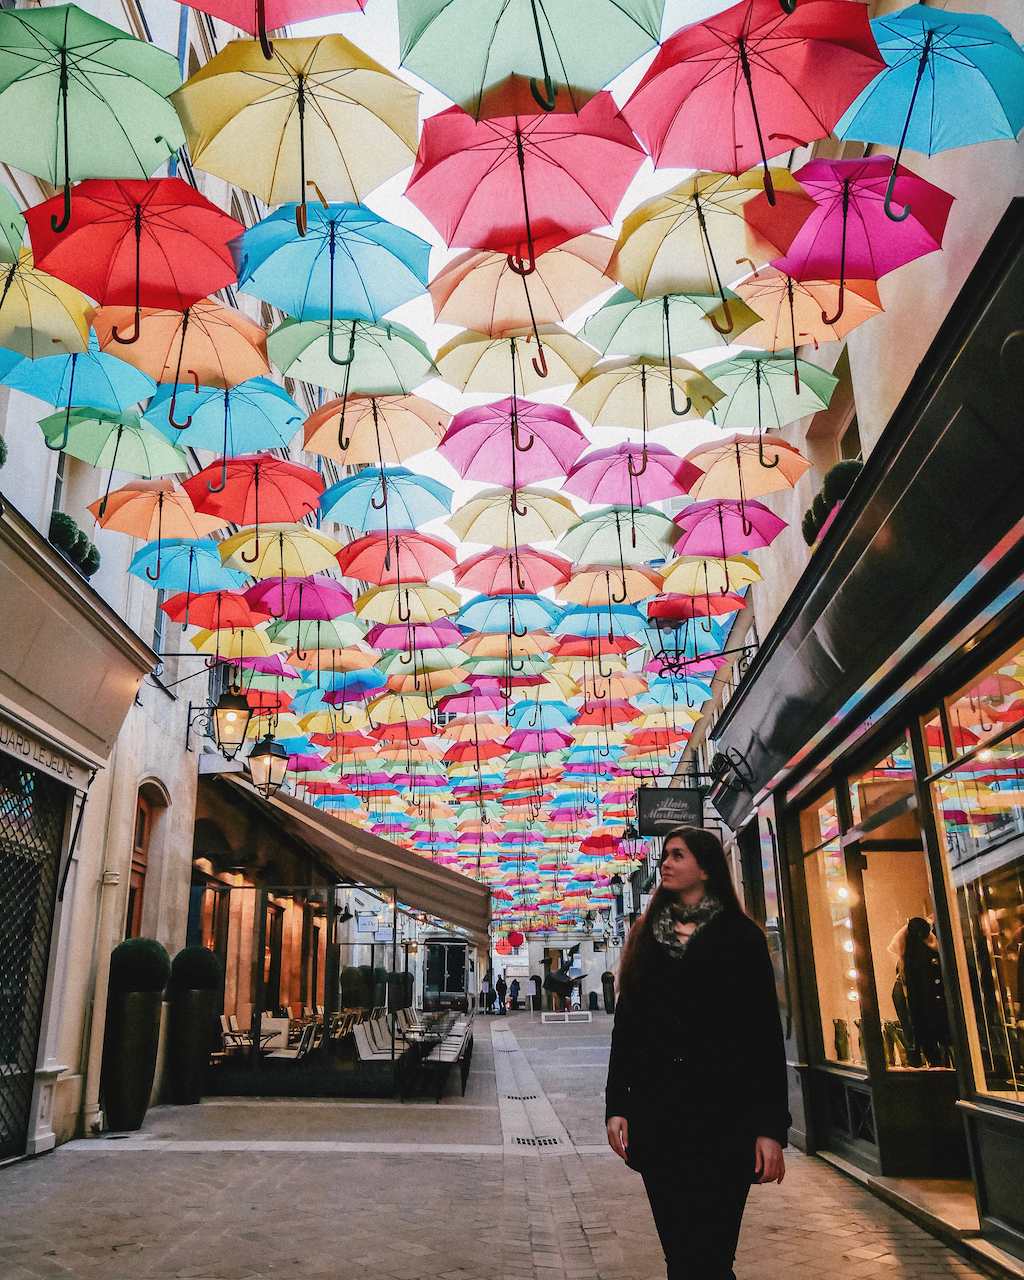 Tunnel de parapluies colorés près de la place Vendome - Paris - France